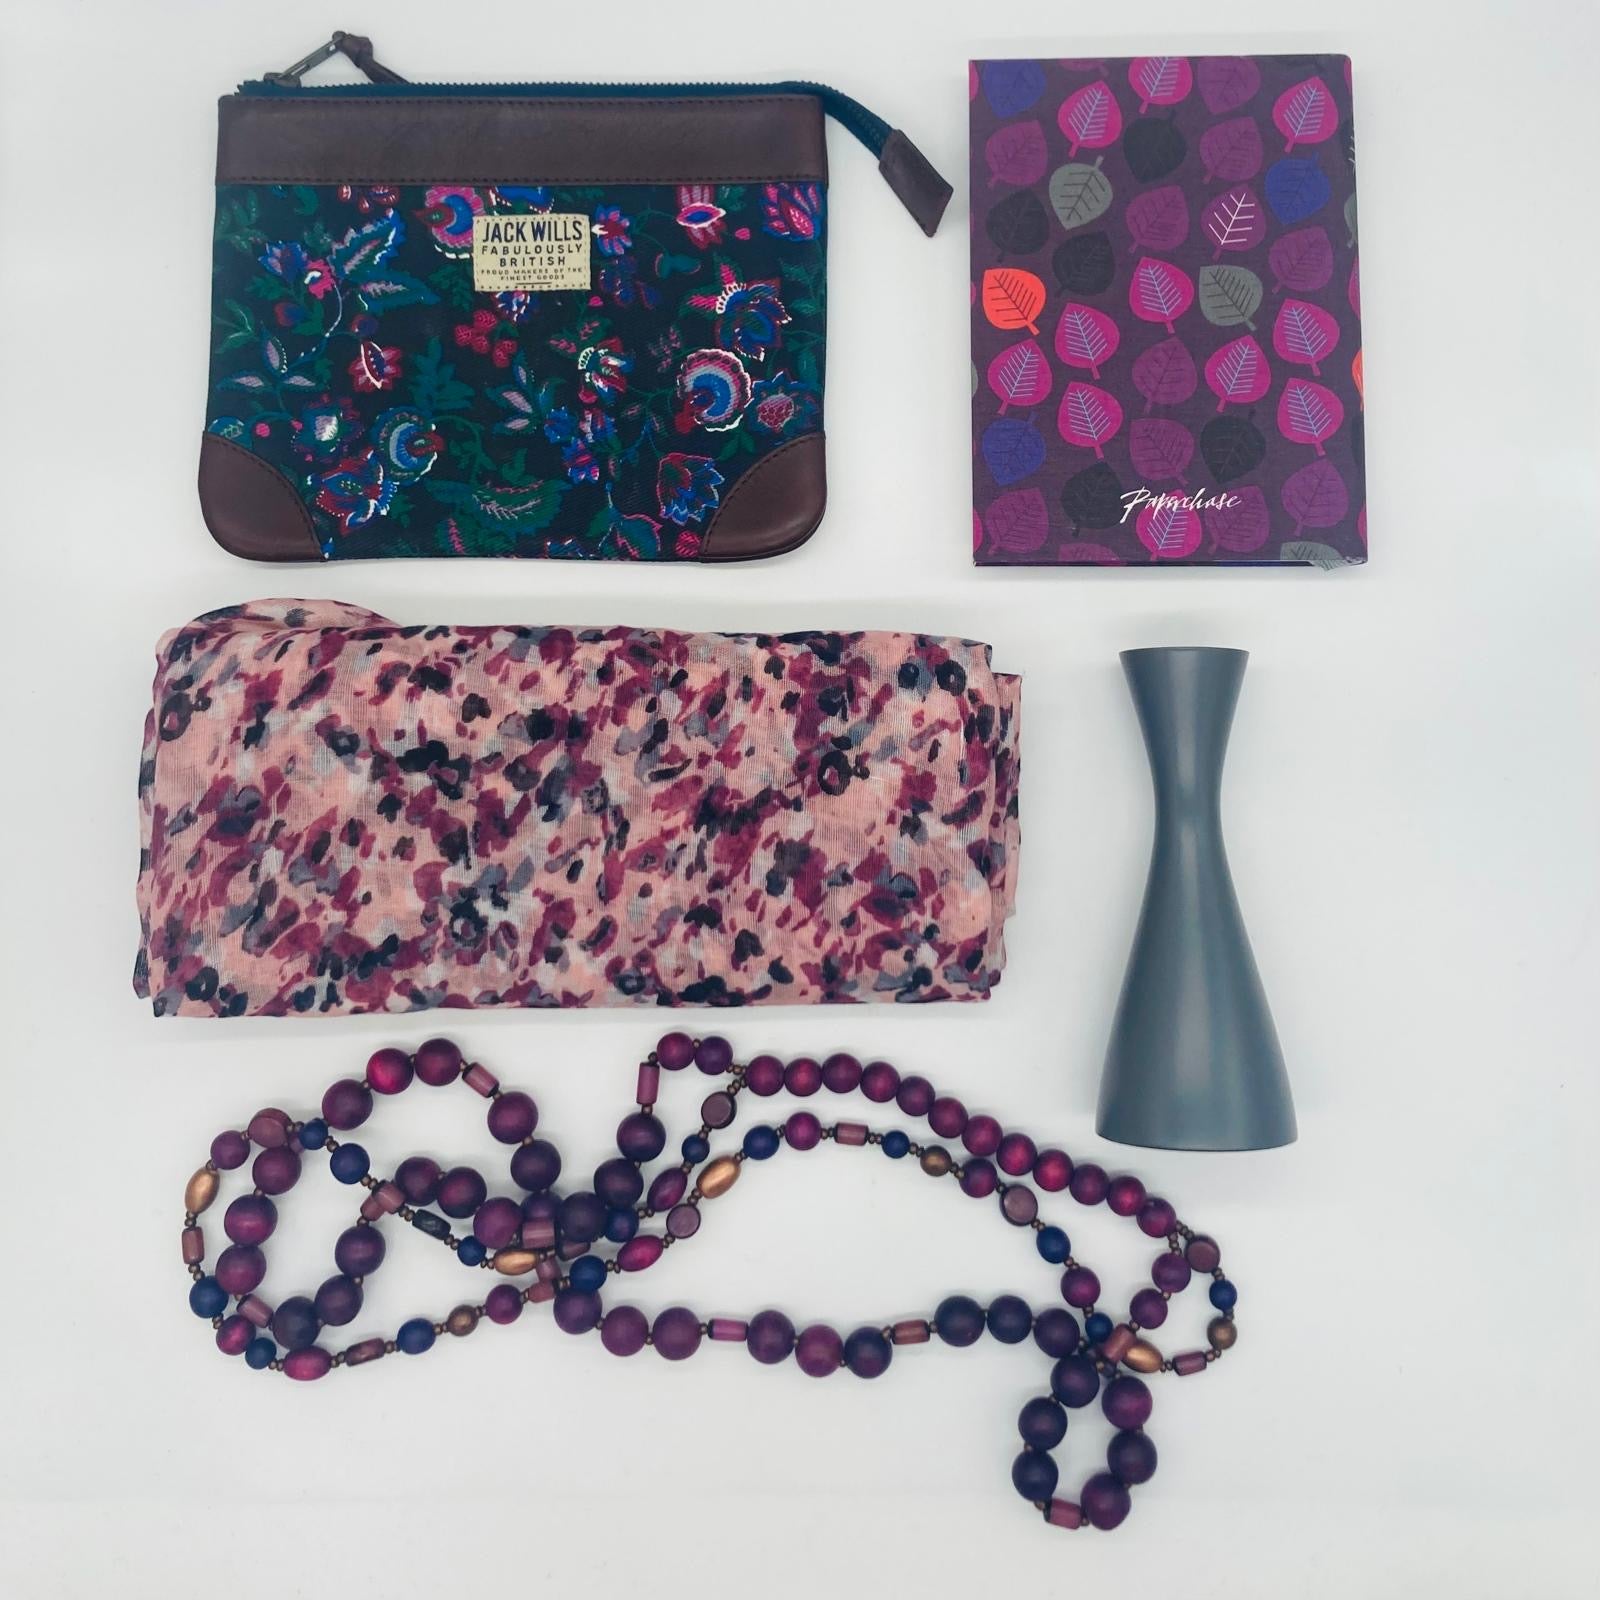 'Purple Daze' (as new accessory box!)